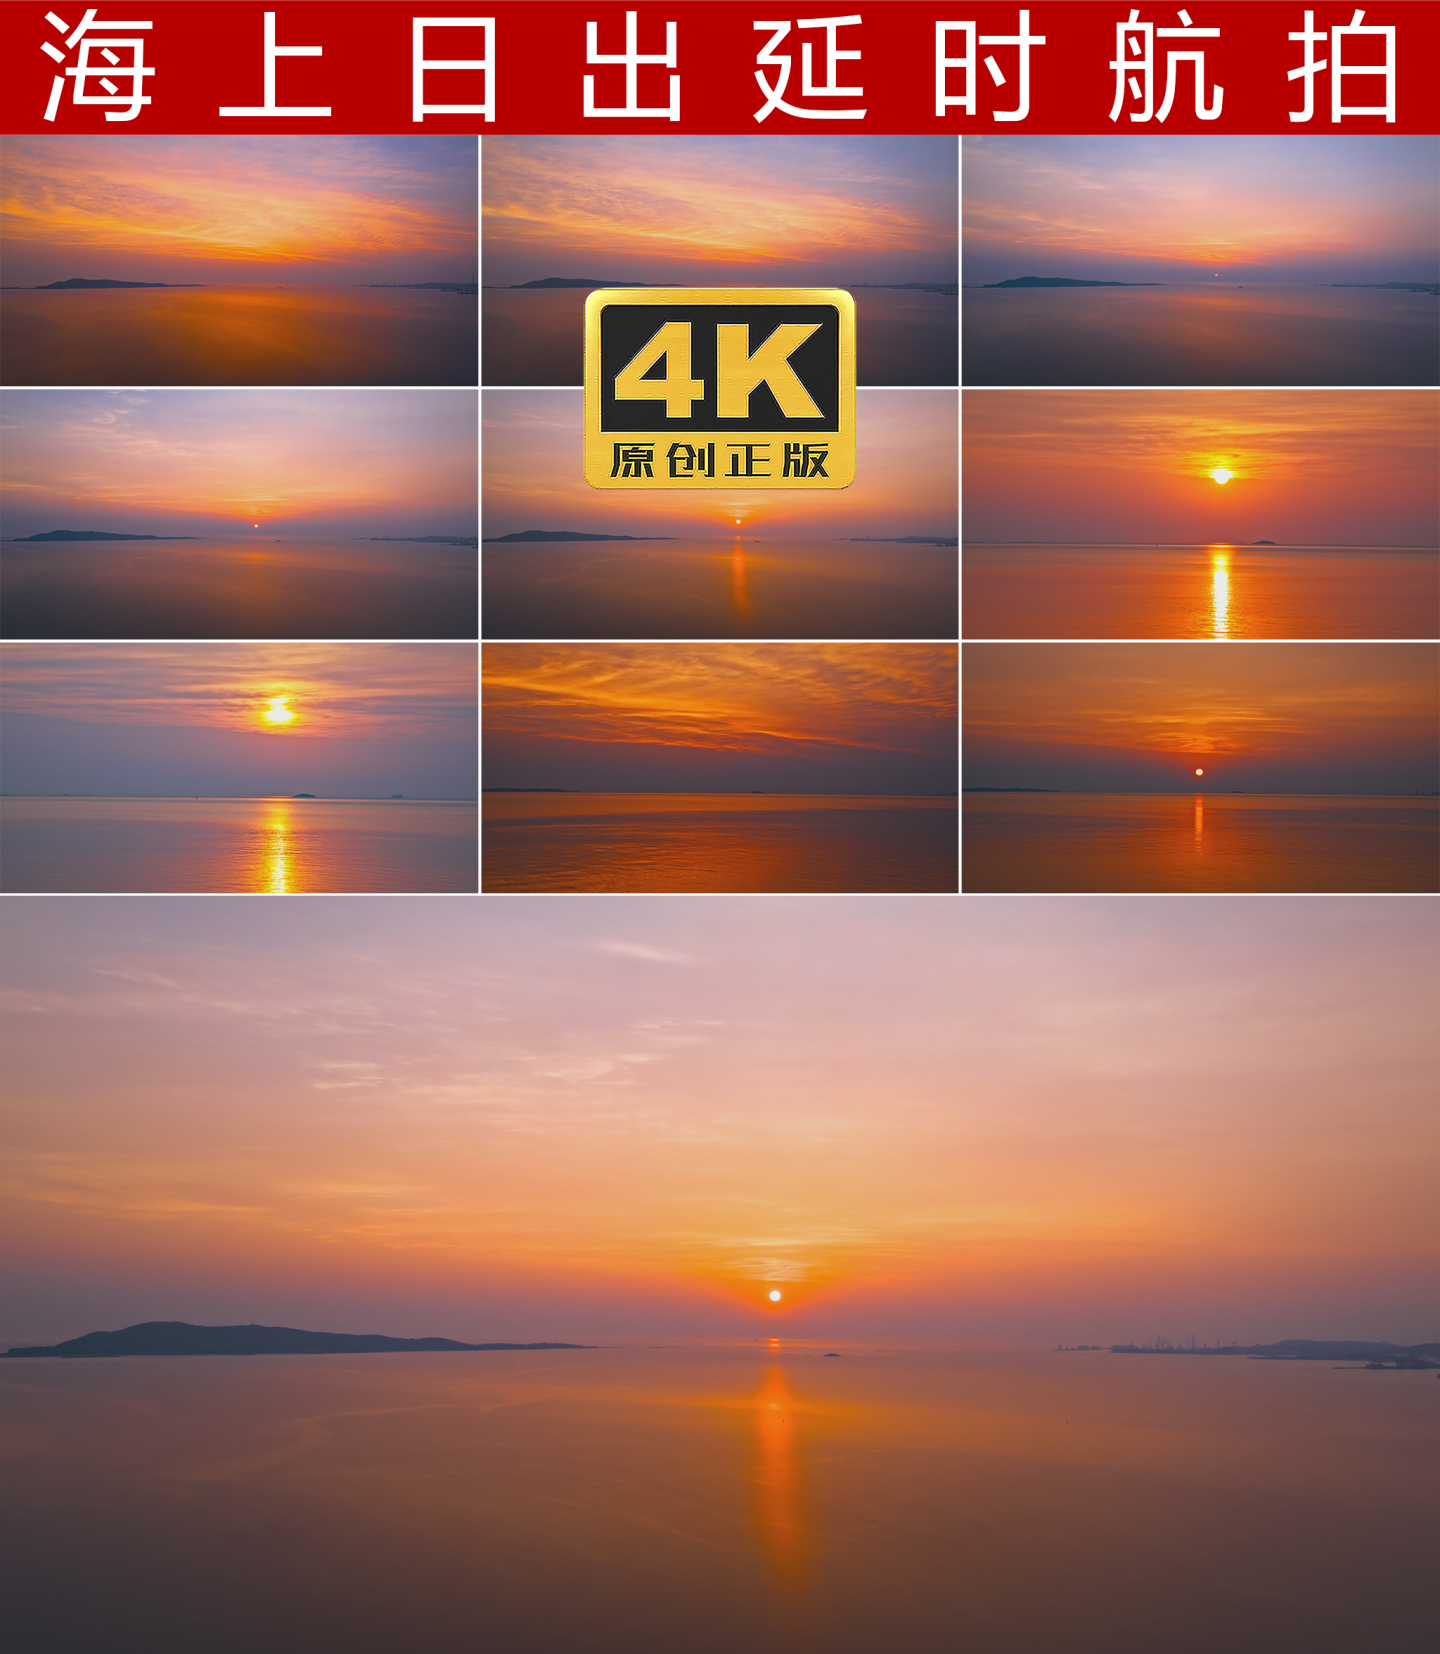 海上日出太阳升起4K